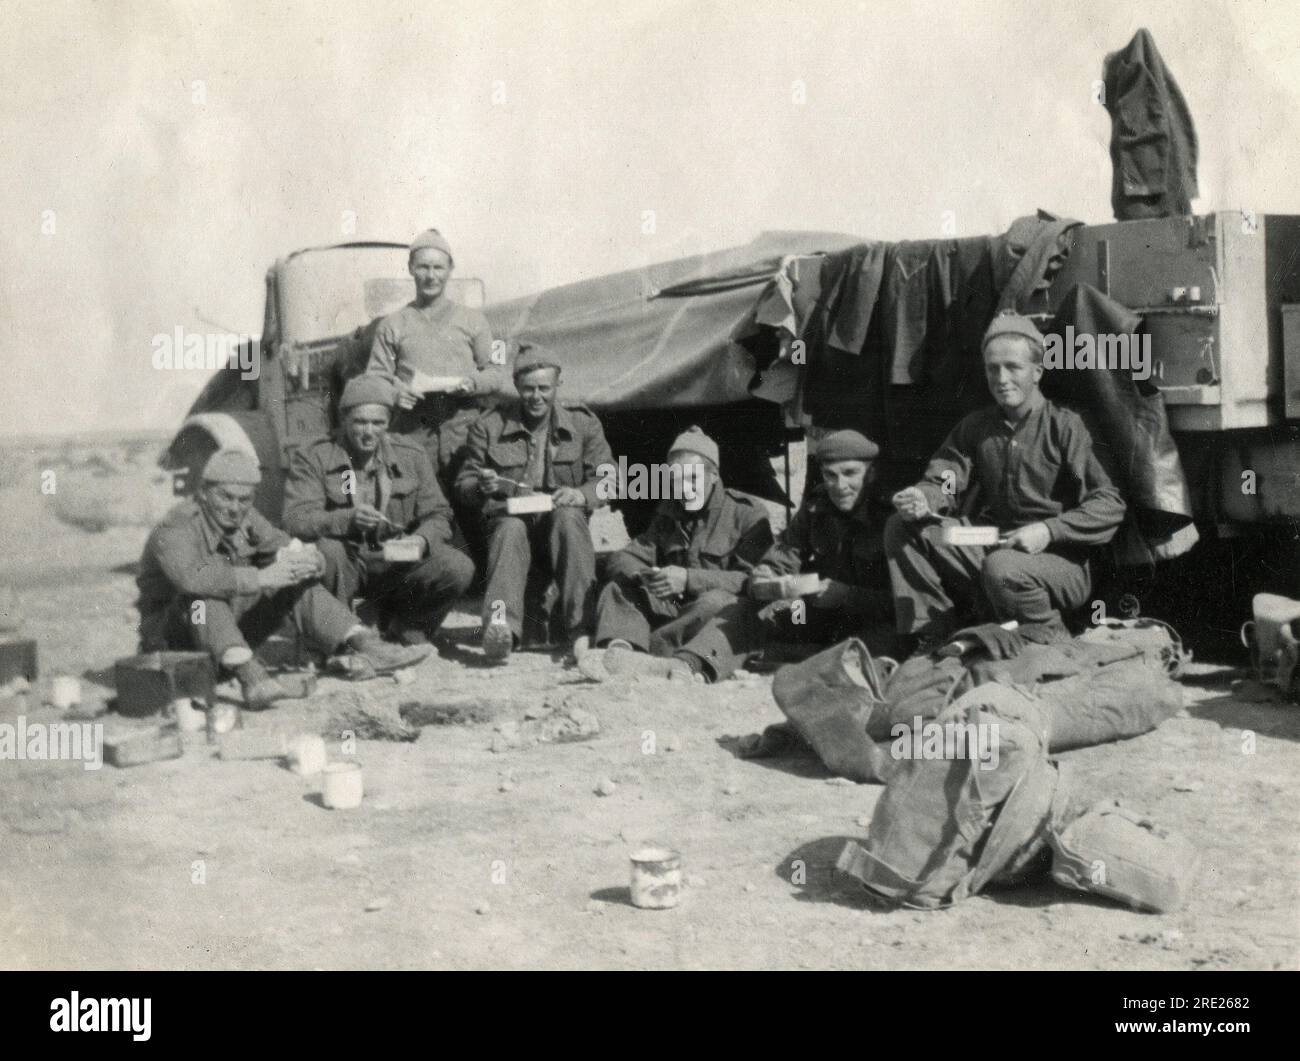 Libye. 1942. Des soldats britanniques mangeaient un repas dans des boîtes de mess alors qu ' ils étaient assis devant une paire de camions du Canadian Military Pattern (CMP) près de MSU (Libye) en janvier 1942. La photographie a été prise pendant la campagne nord-africaine de la Seconde Guerre mondiale. Banque D'Images